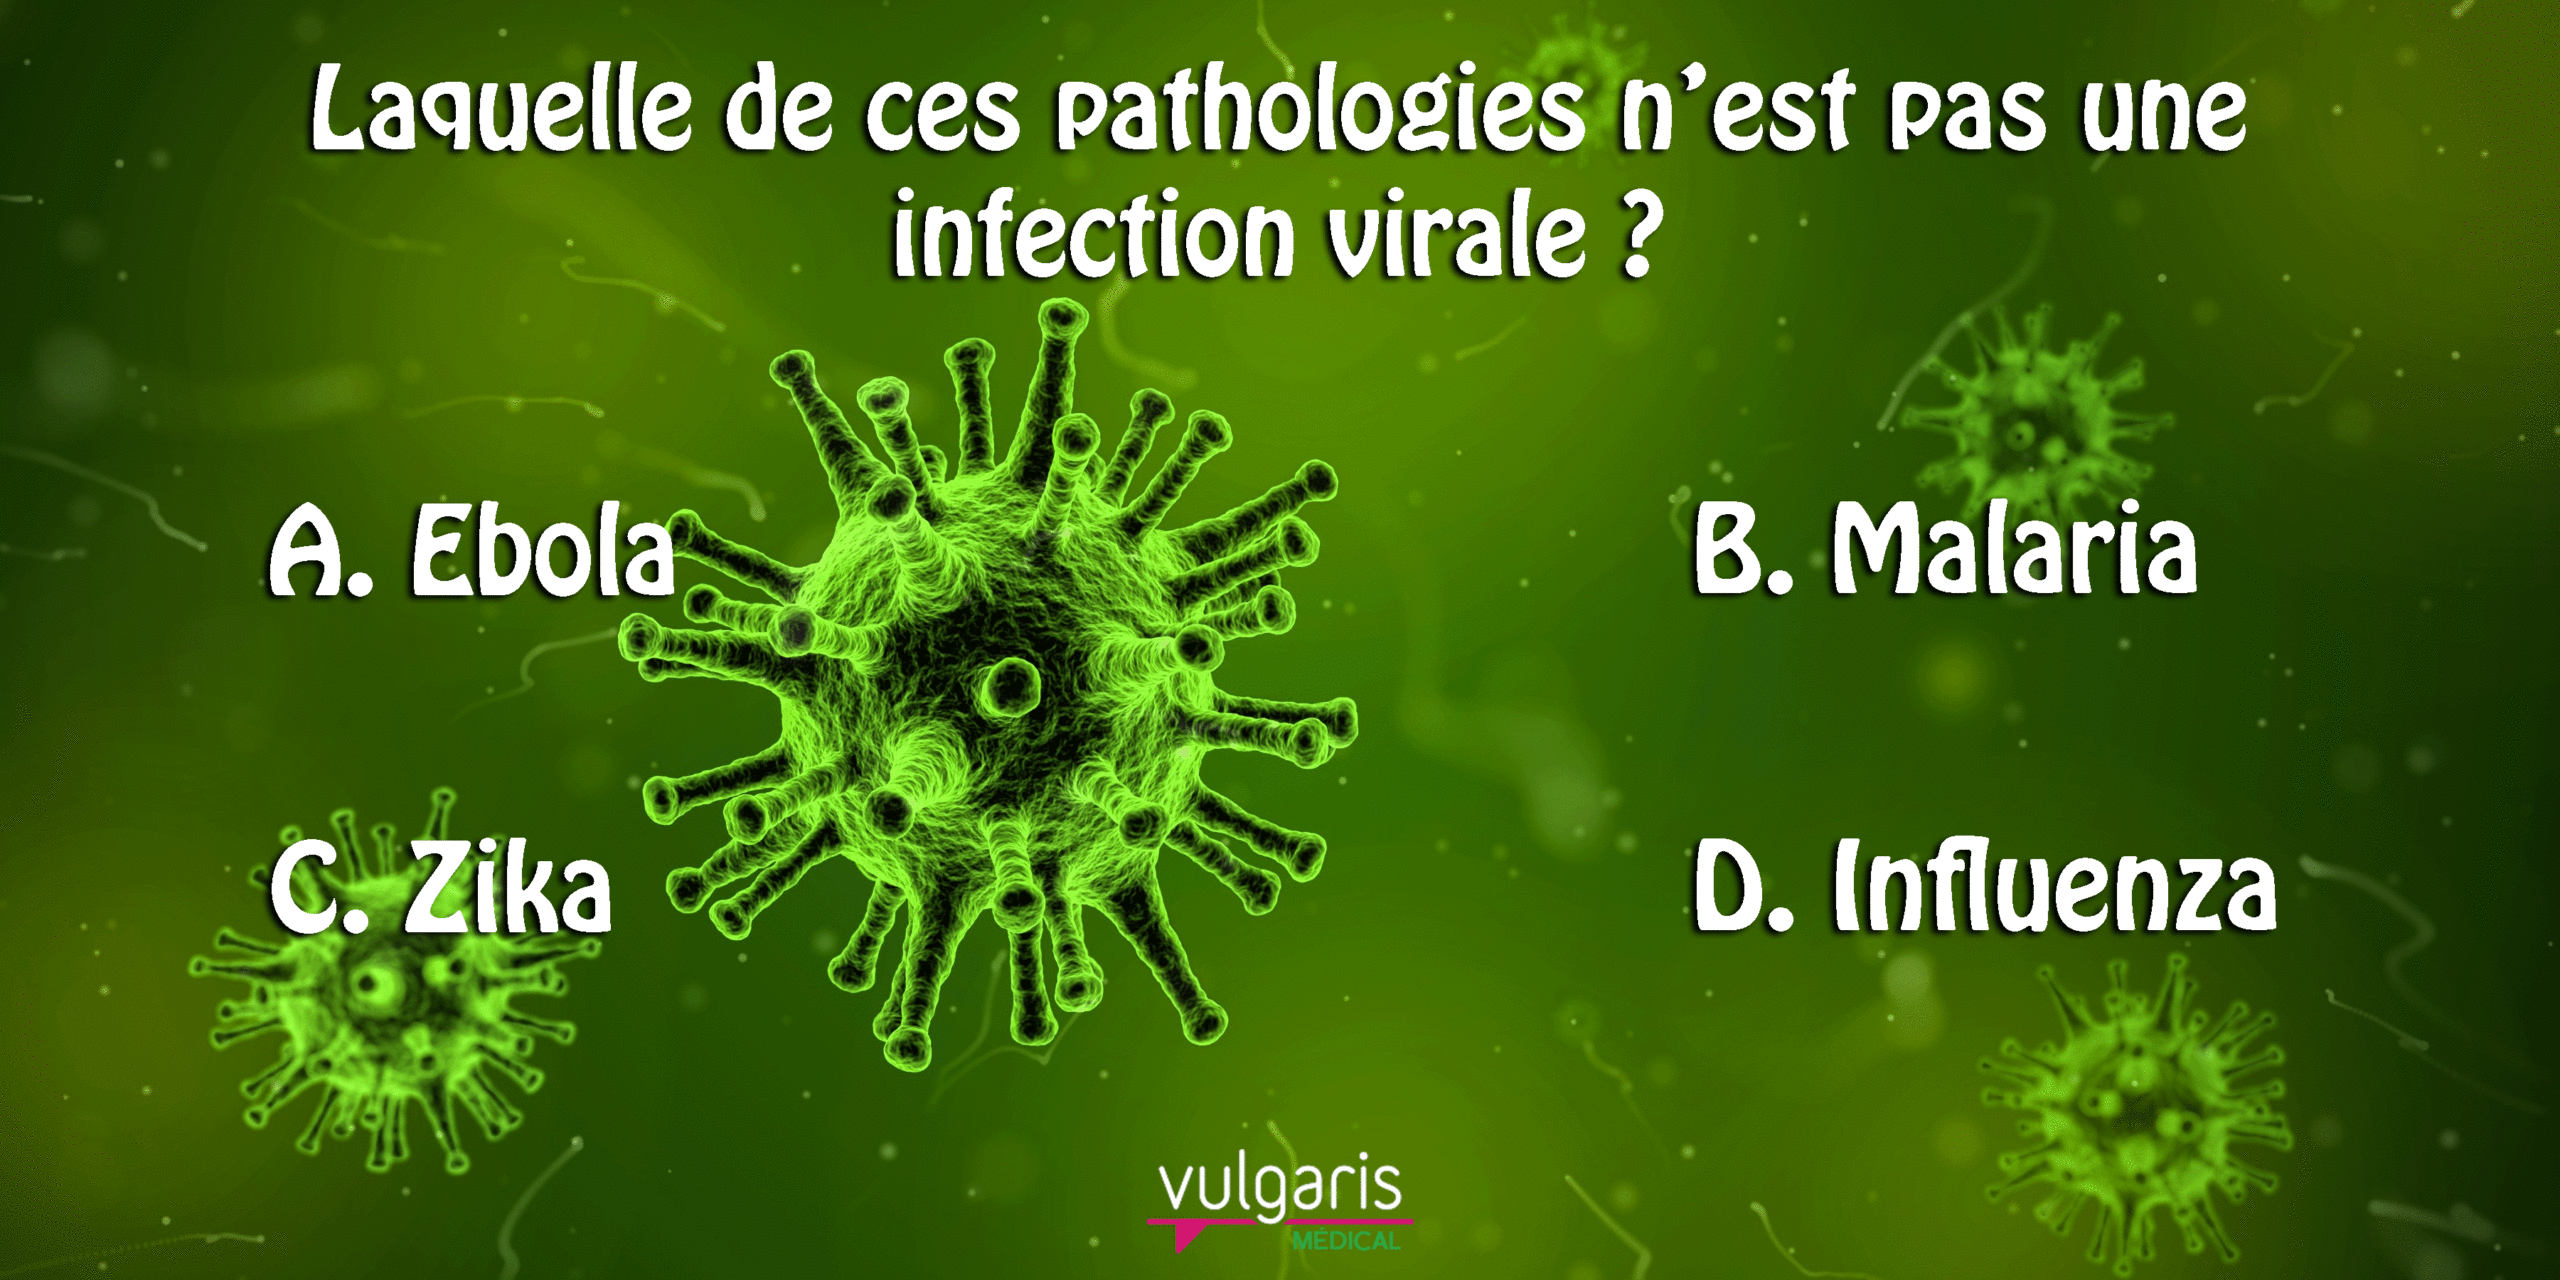 [Quizz] Laquelle de ces pathologies n'est pas une infection virale ?